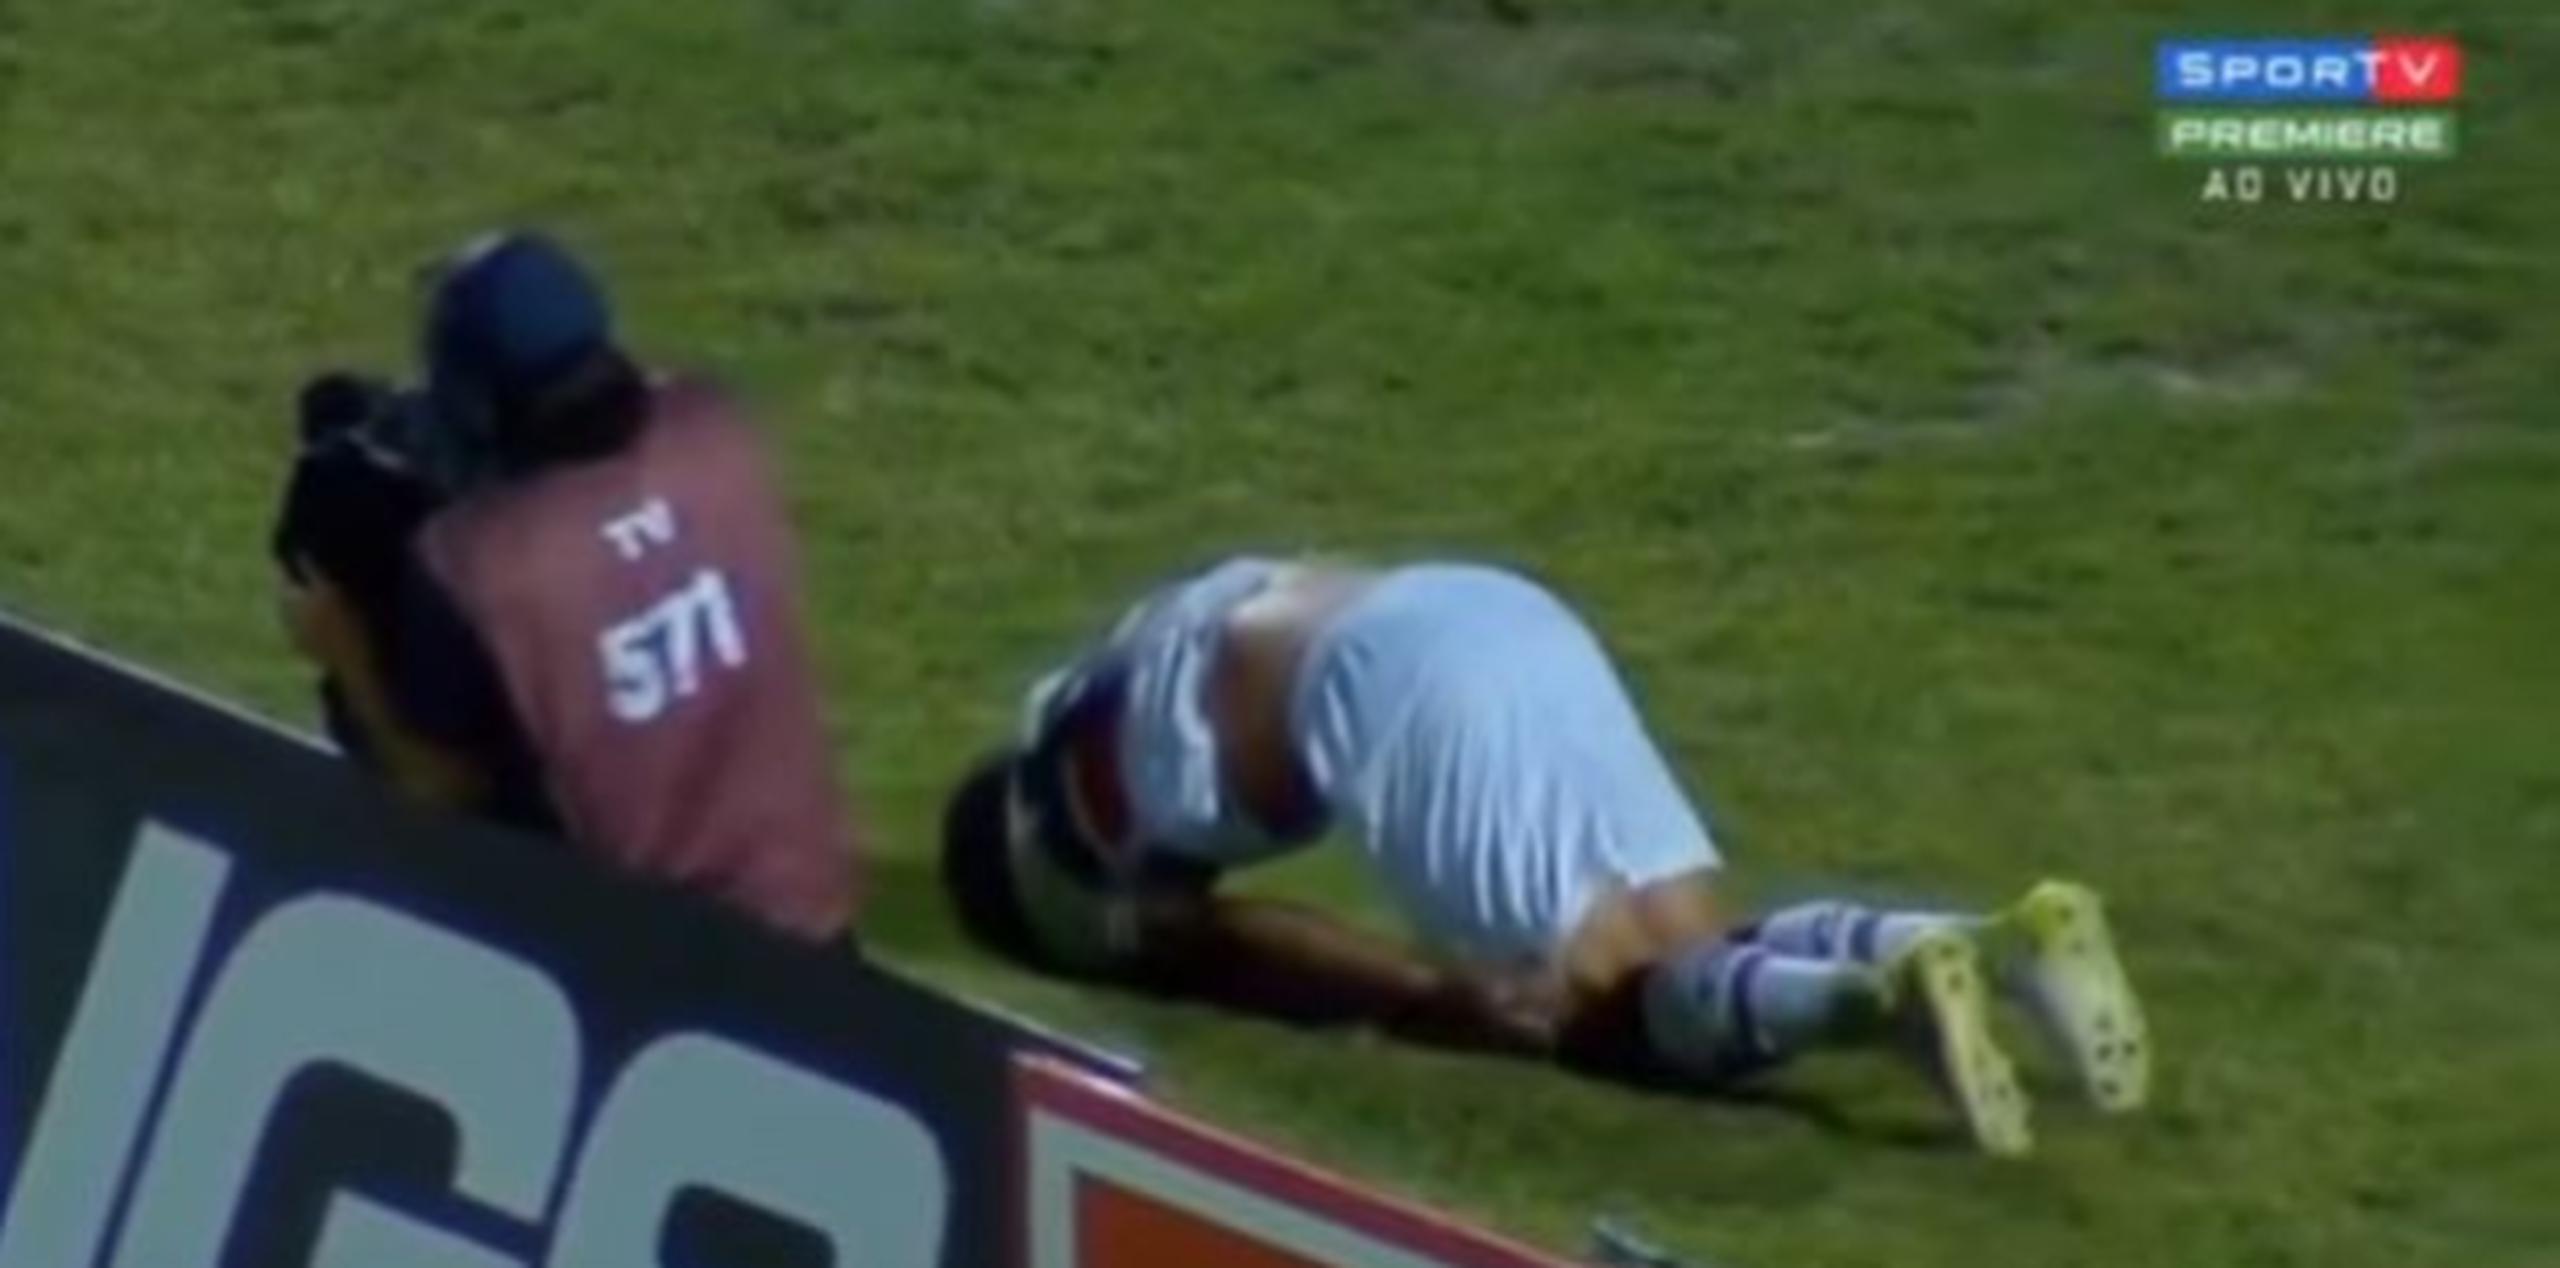 El jugador no calculó de manera adecuada y se golpeó de manera tan violenta la pierna, que dio una vuelta en el aire. (Foto: captura de YouTube)